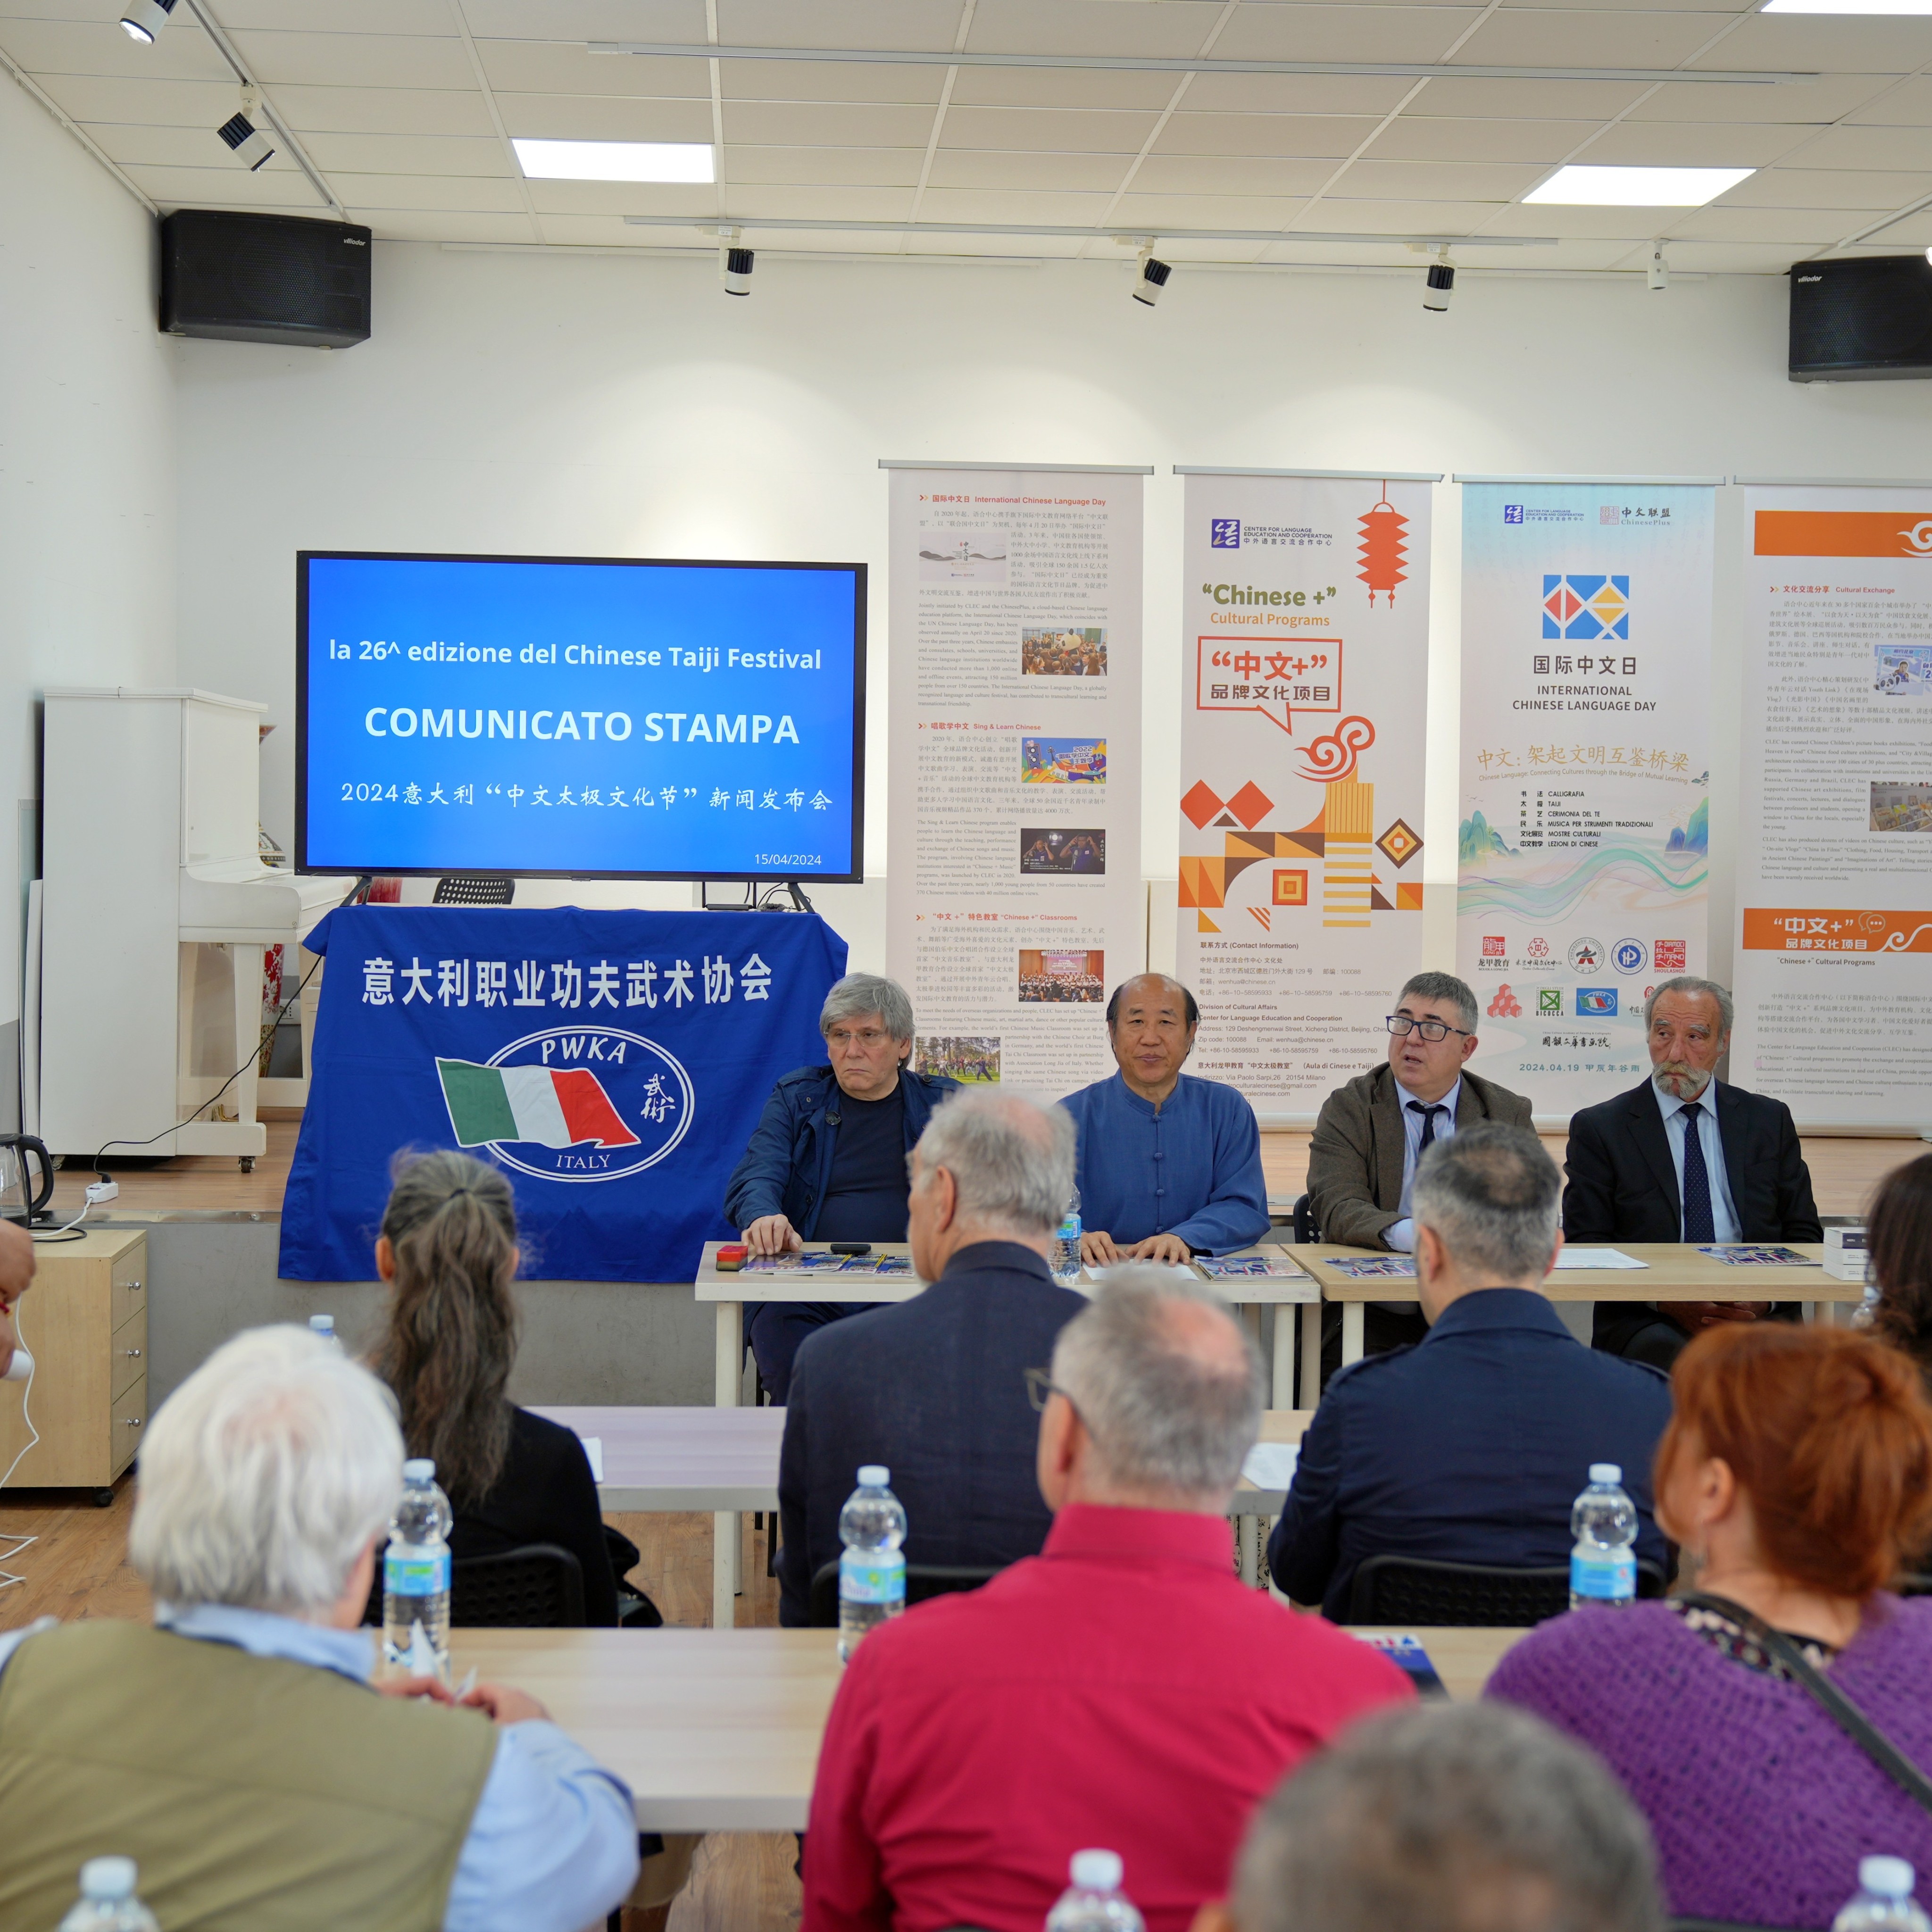  意大利中文太极文化节”组委会在米兰中国文化中心举行新闻发布会 